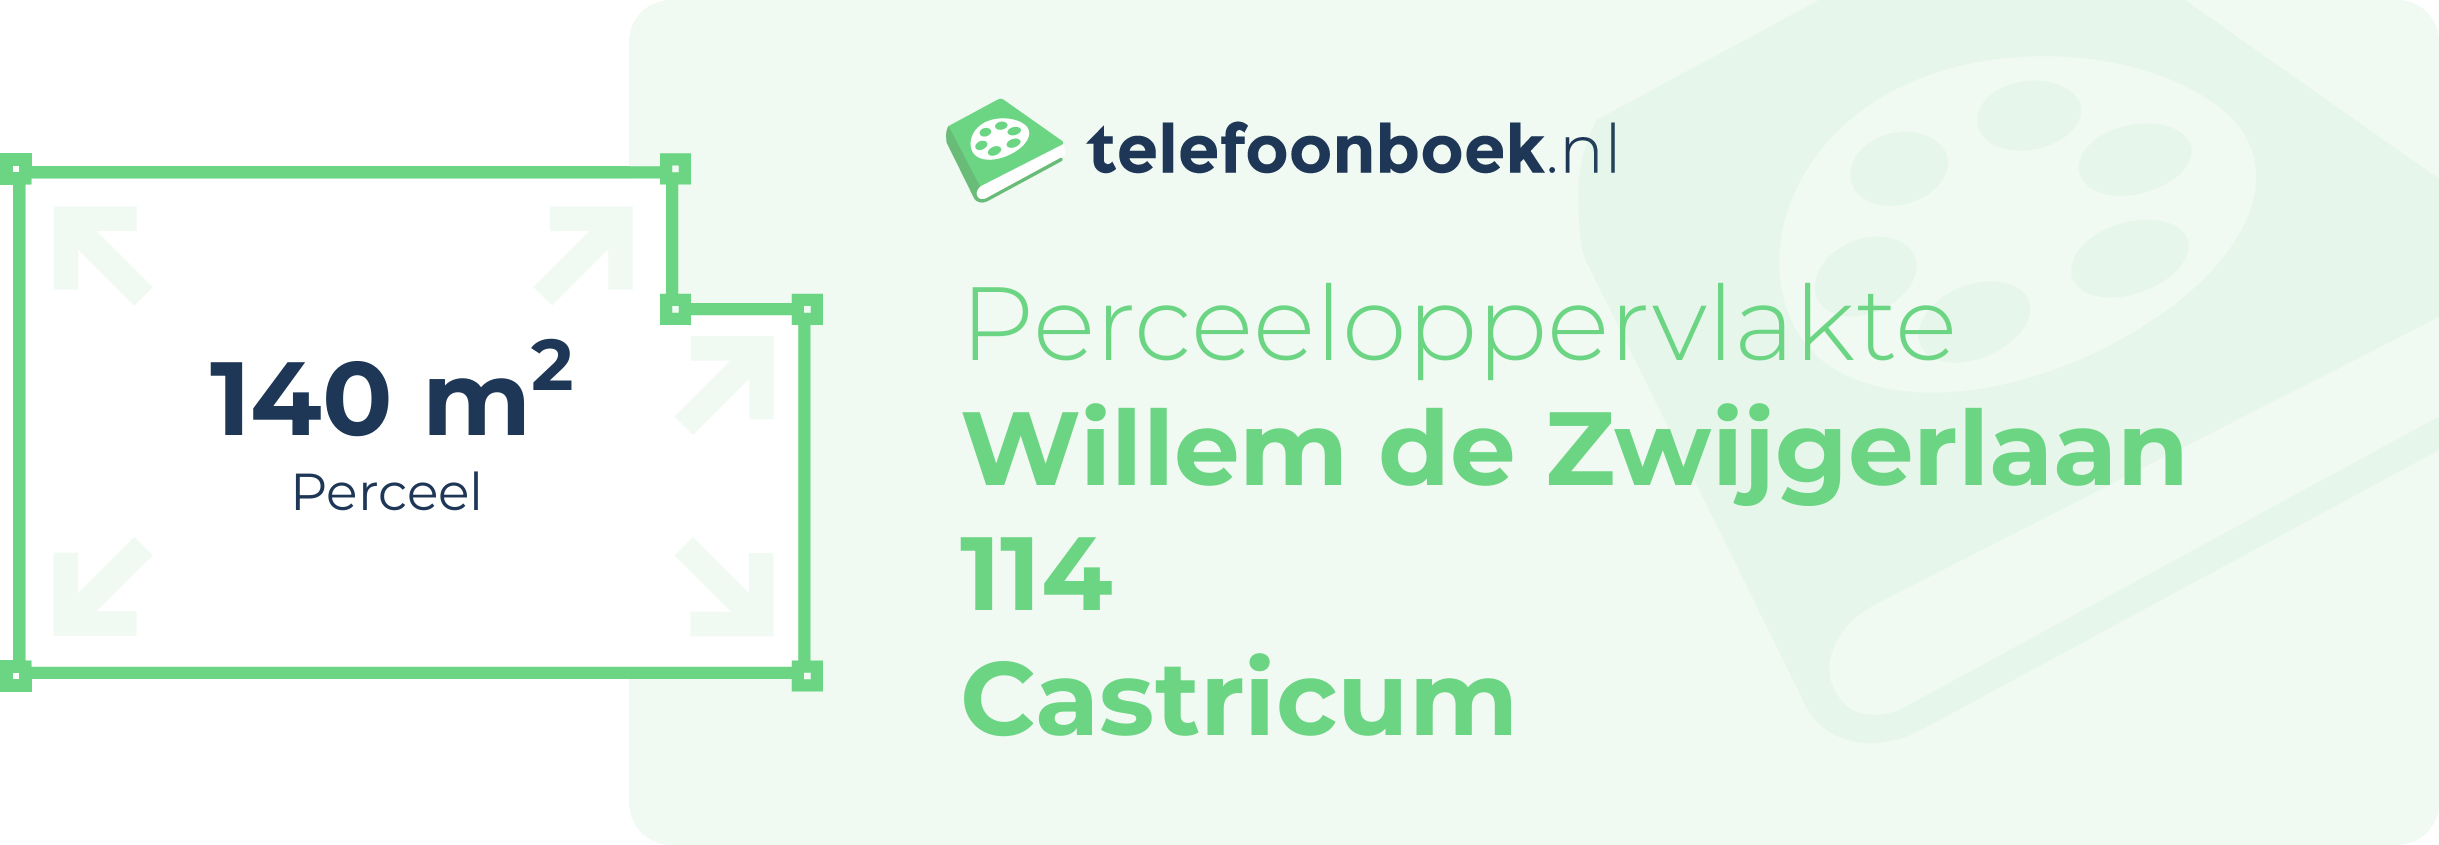 Perceeloppervlakte Willem De Zwijgerlaan 114 Castricum